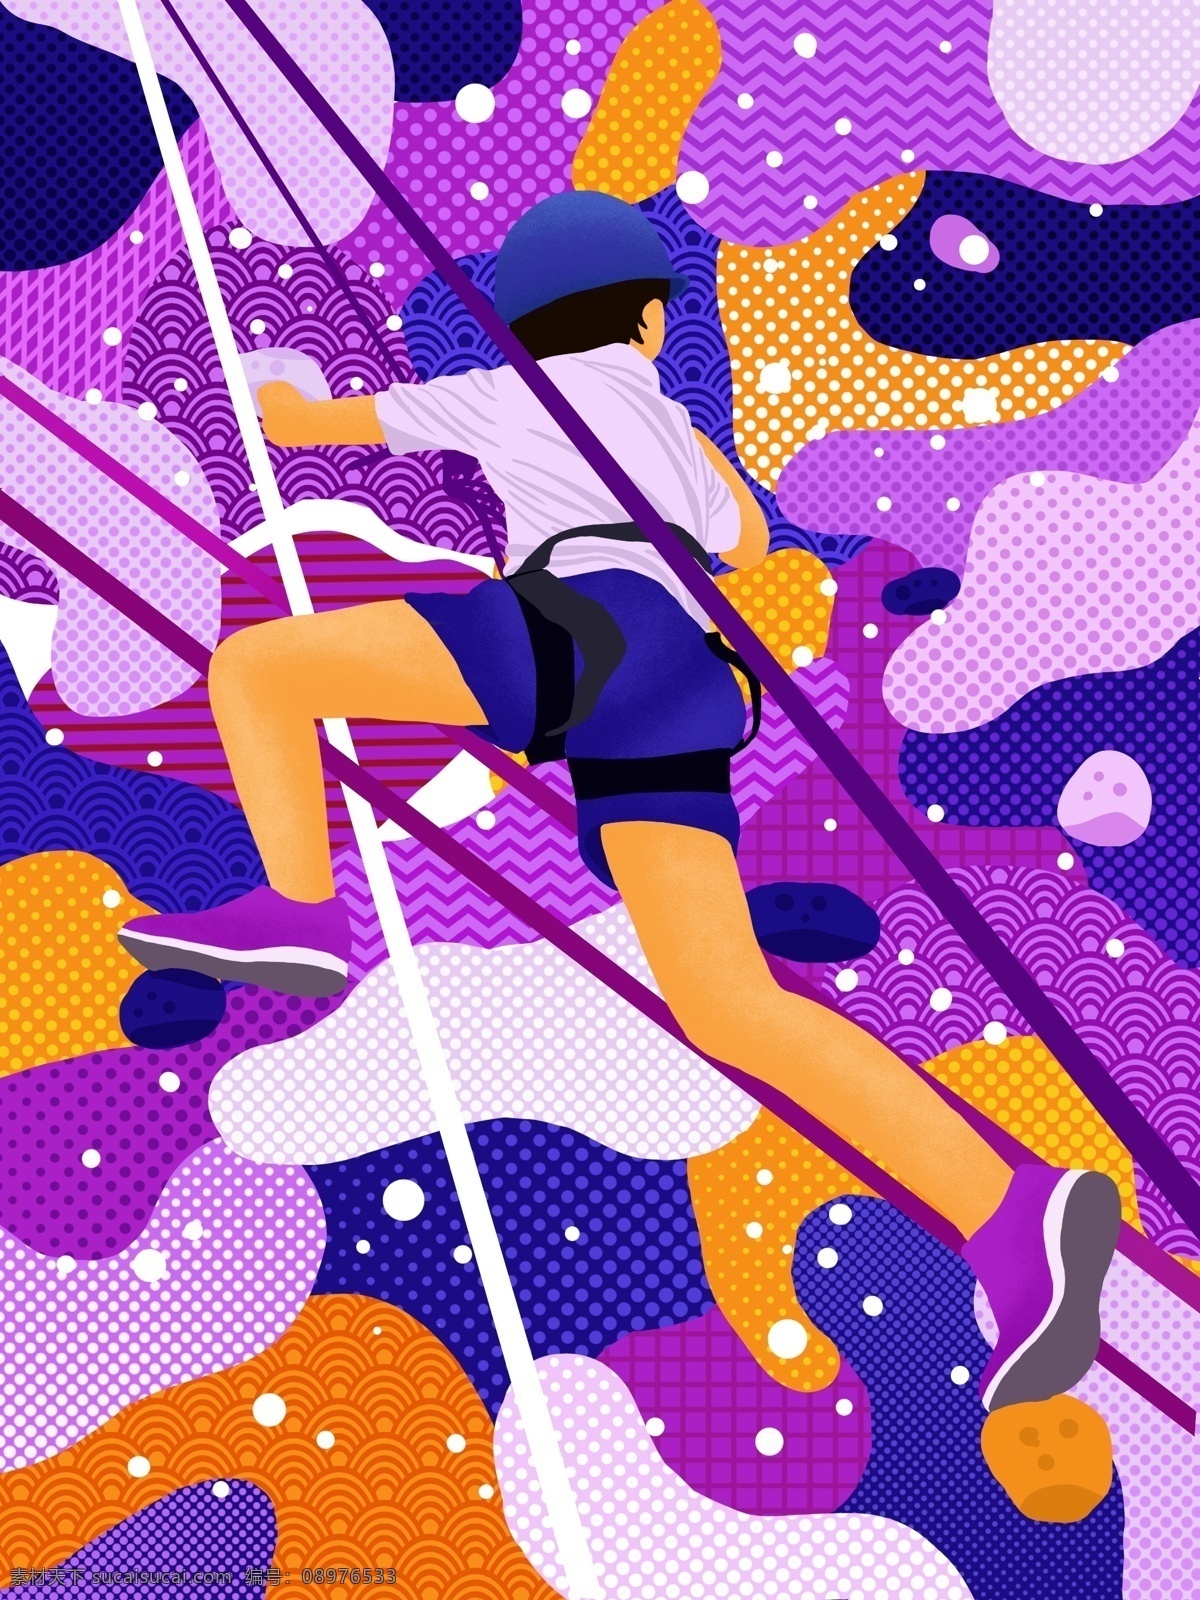 游走 梦 运动 系 攀岩 插画 抽象插画 抽象图形 男孩 游走的梦 运动插画 微信用图 海报用图